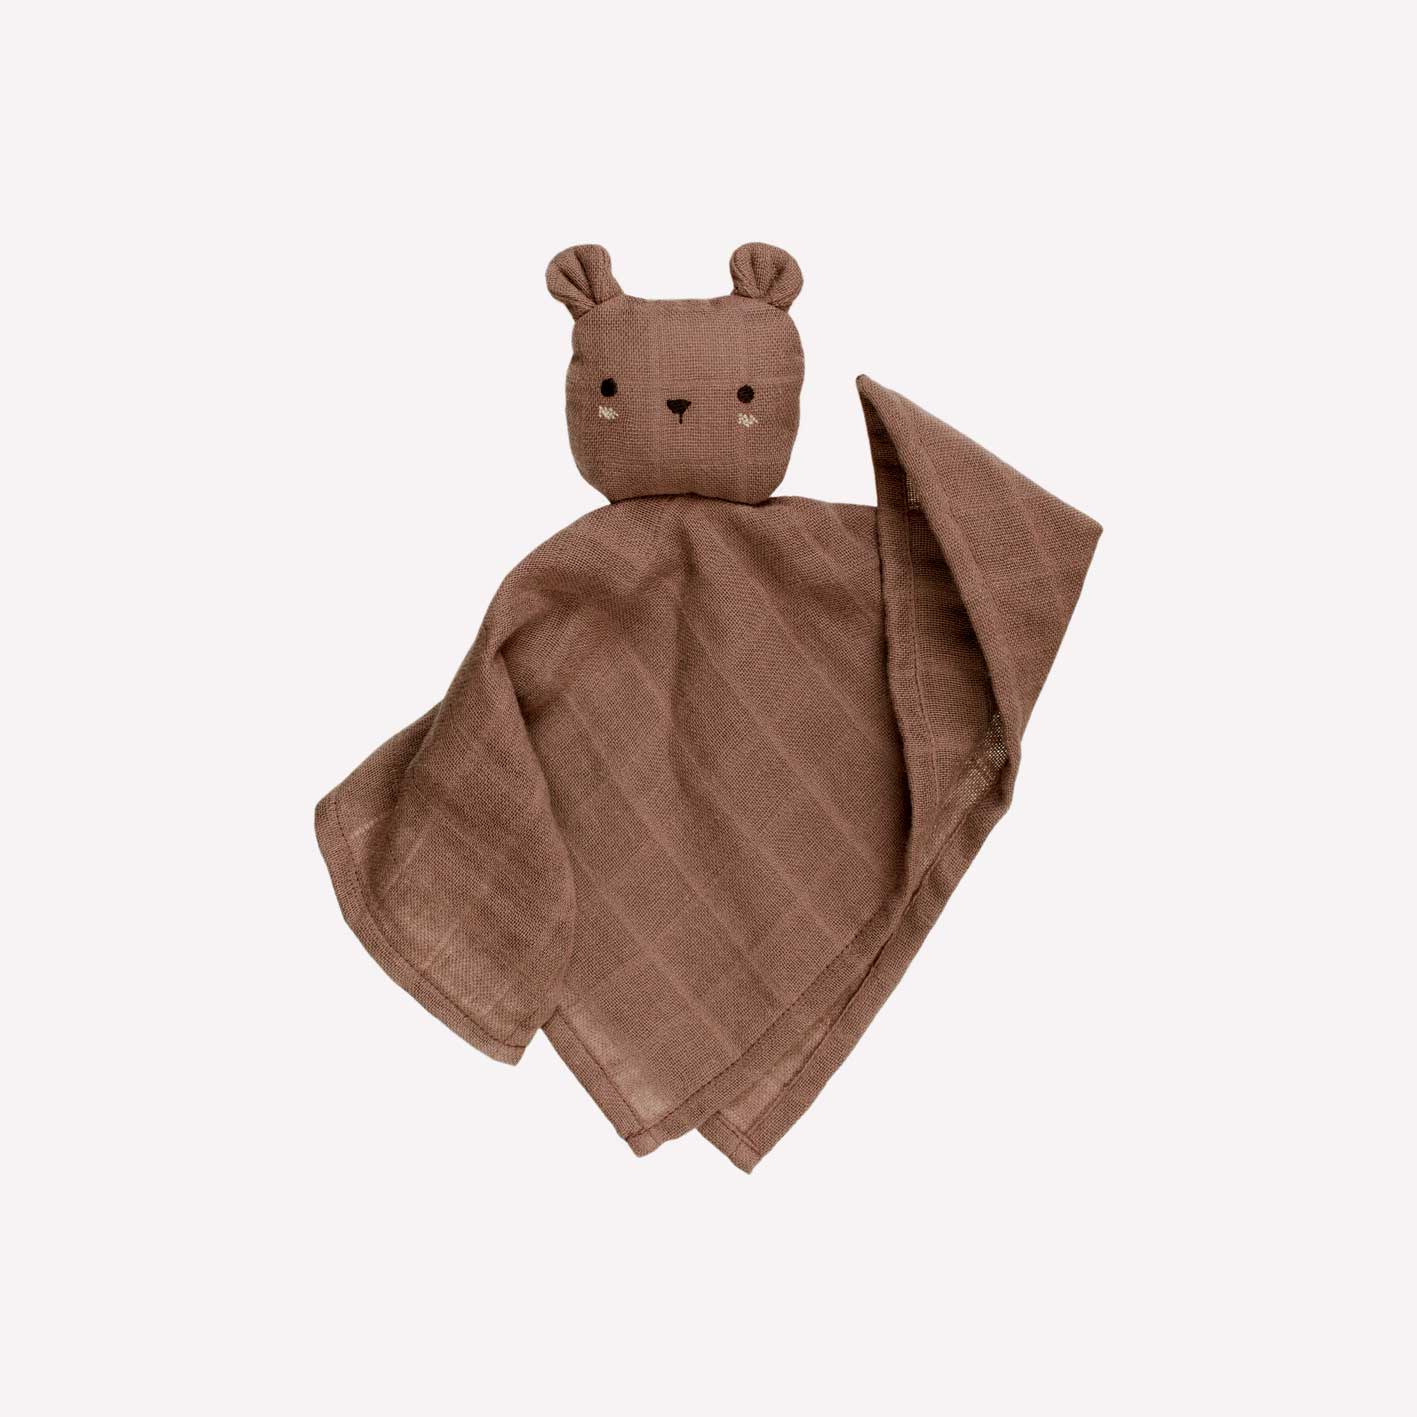 Teddy Cuddle Cloth